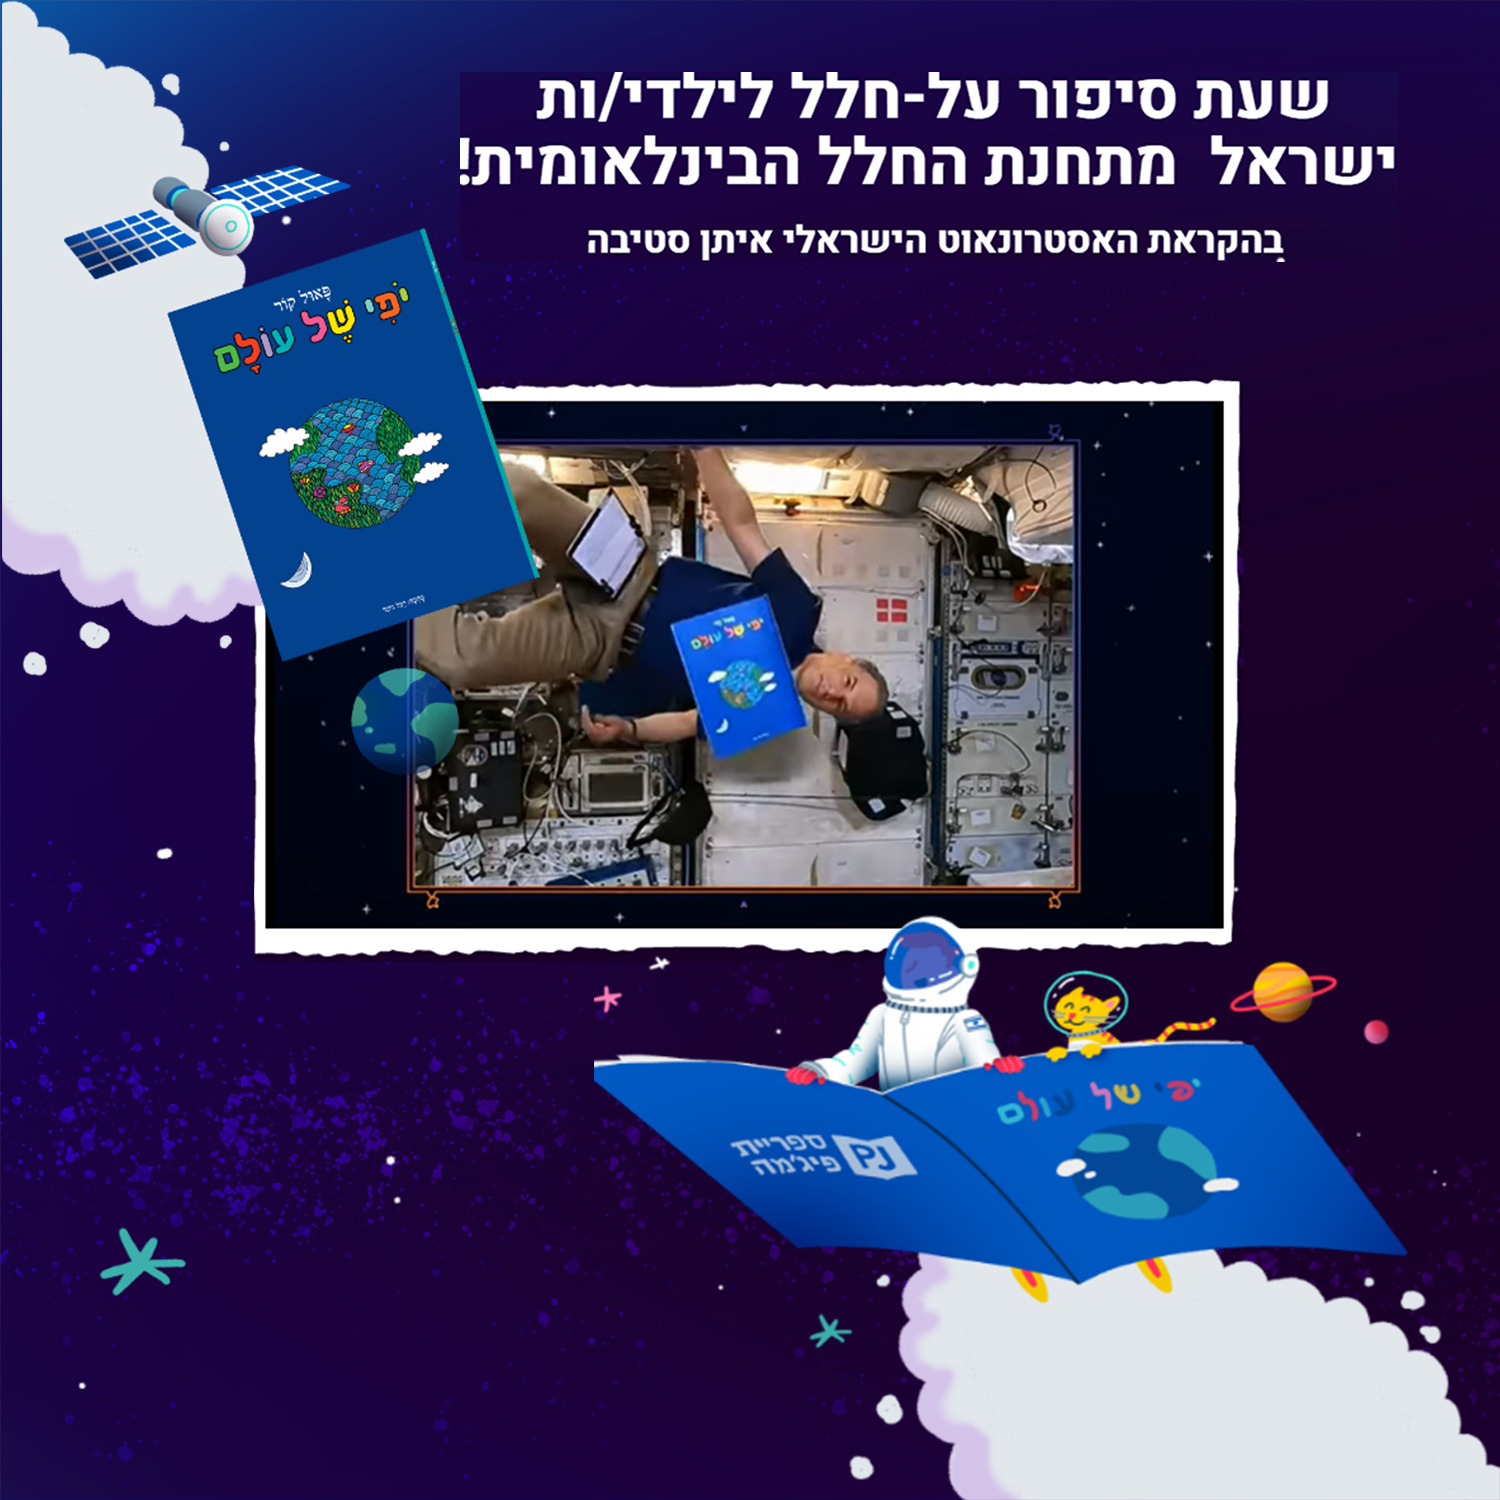 כריכת הספר שעת סיפור על-חלל לילדי/ות ישראל מתחנת החלל הבינלאומית!